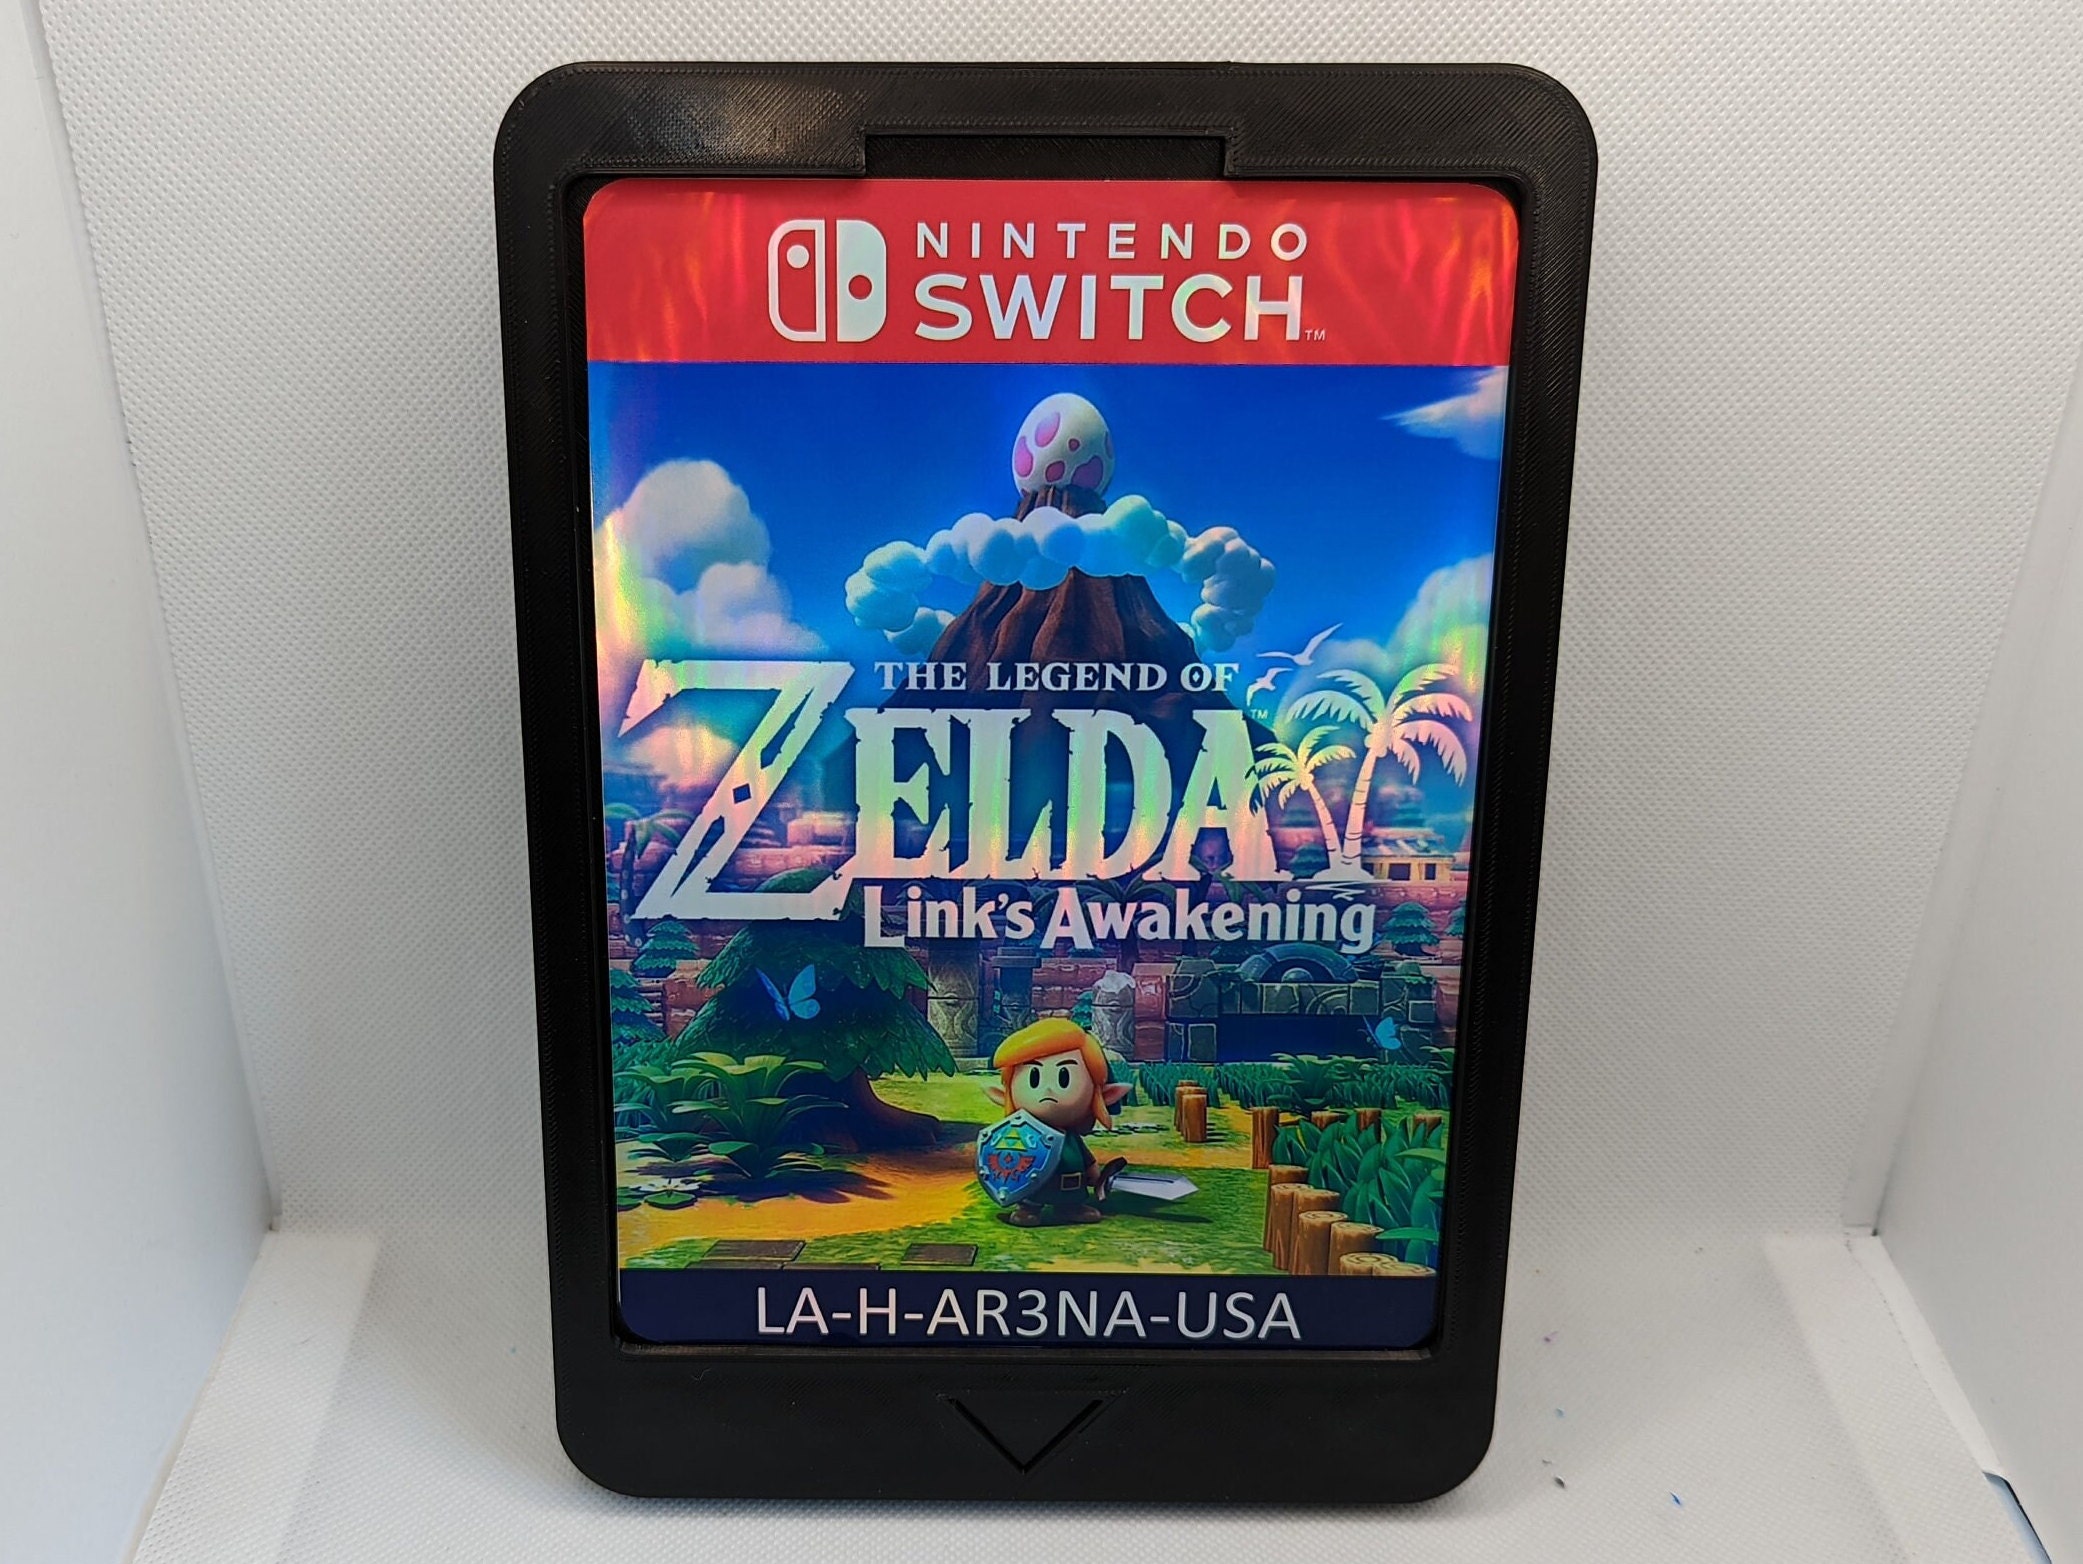 Buy The Legend of Zelda: Link's Awakening Nintendo Switch